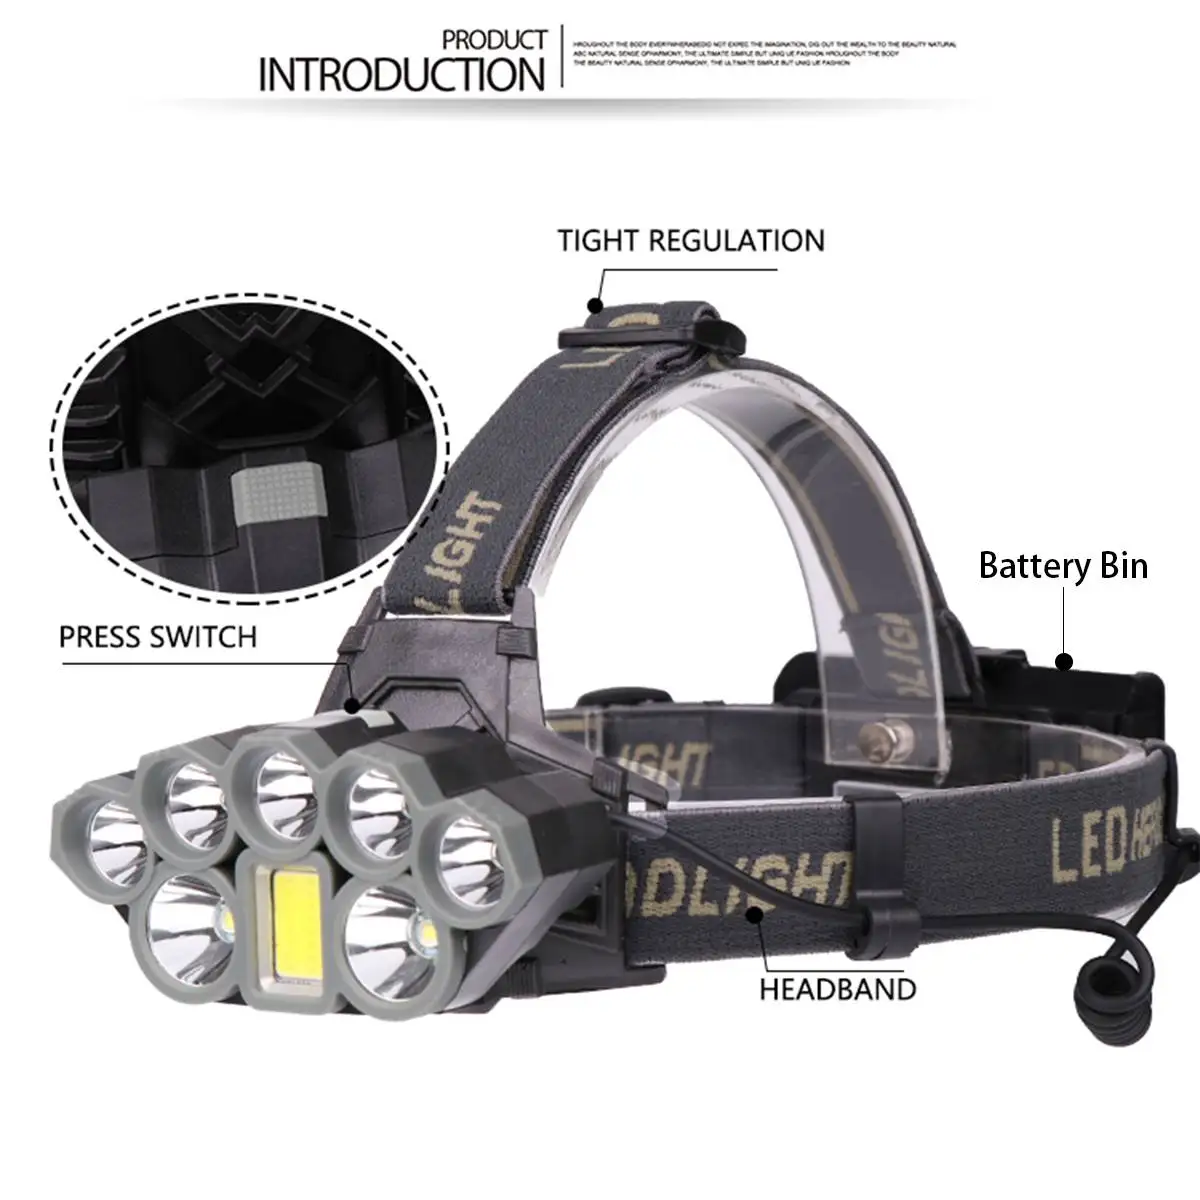 Головной светильник 140000lm светодиодный налобный фонарь Smuxi 7* t6 головной светильник 6 режимов водонепроницаемый светильник-вспышка с возможностью масштабирования 18650 включает в себя для охоты и велоспорта